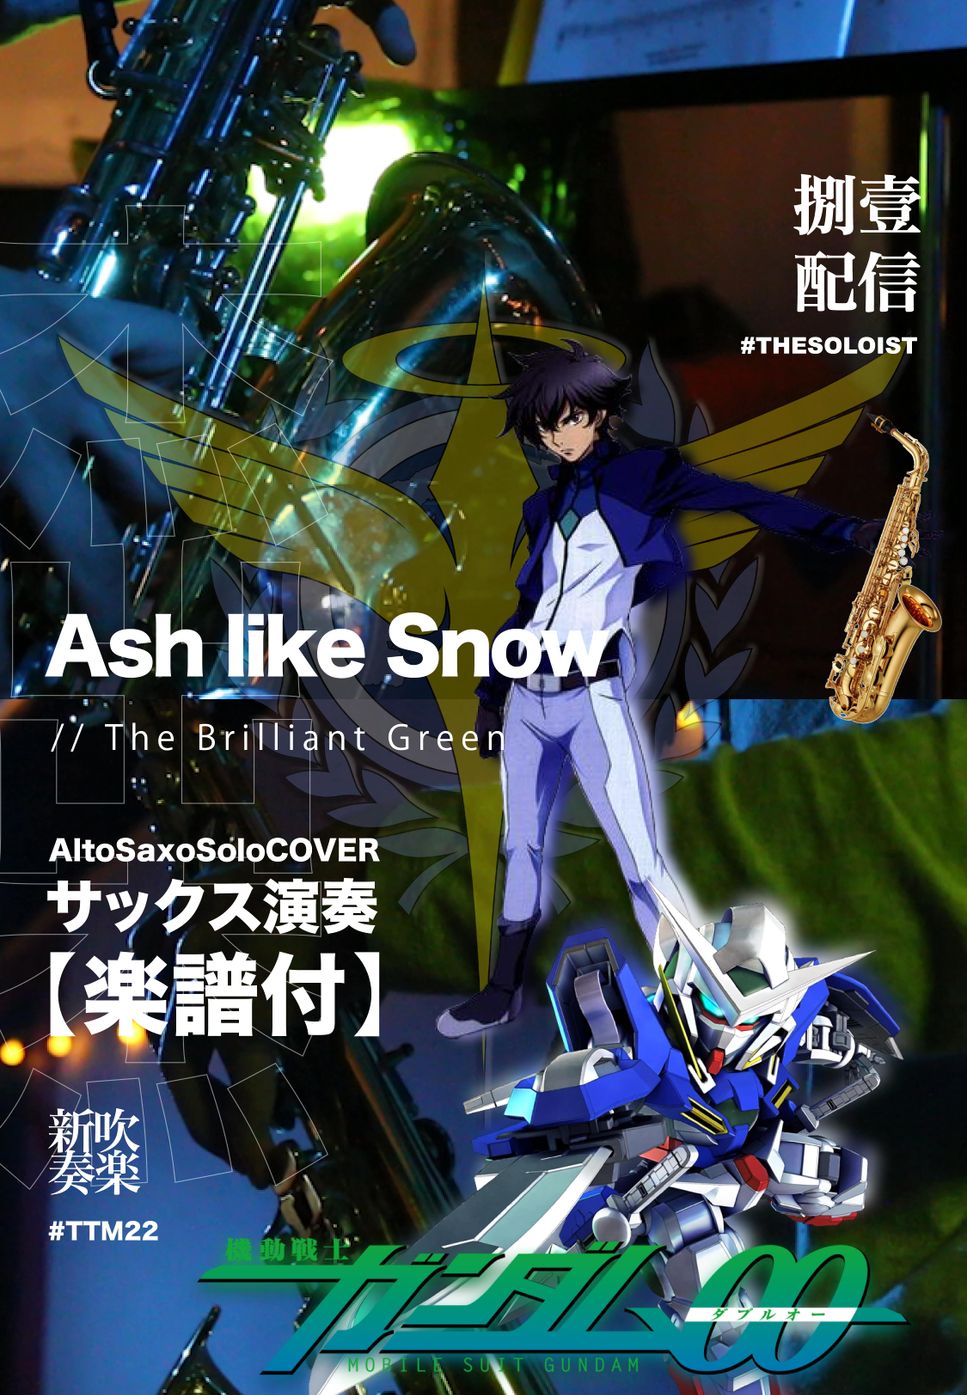 機動戦士ガンダム00 - Ash like Snow (altoSaxoSolo) by FungYip